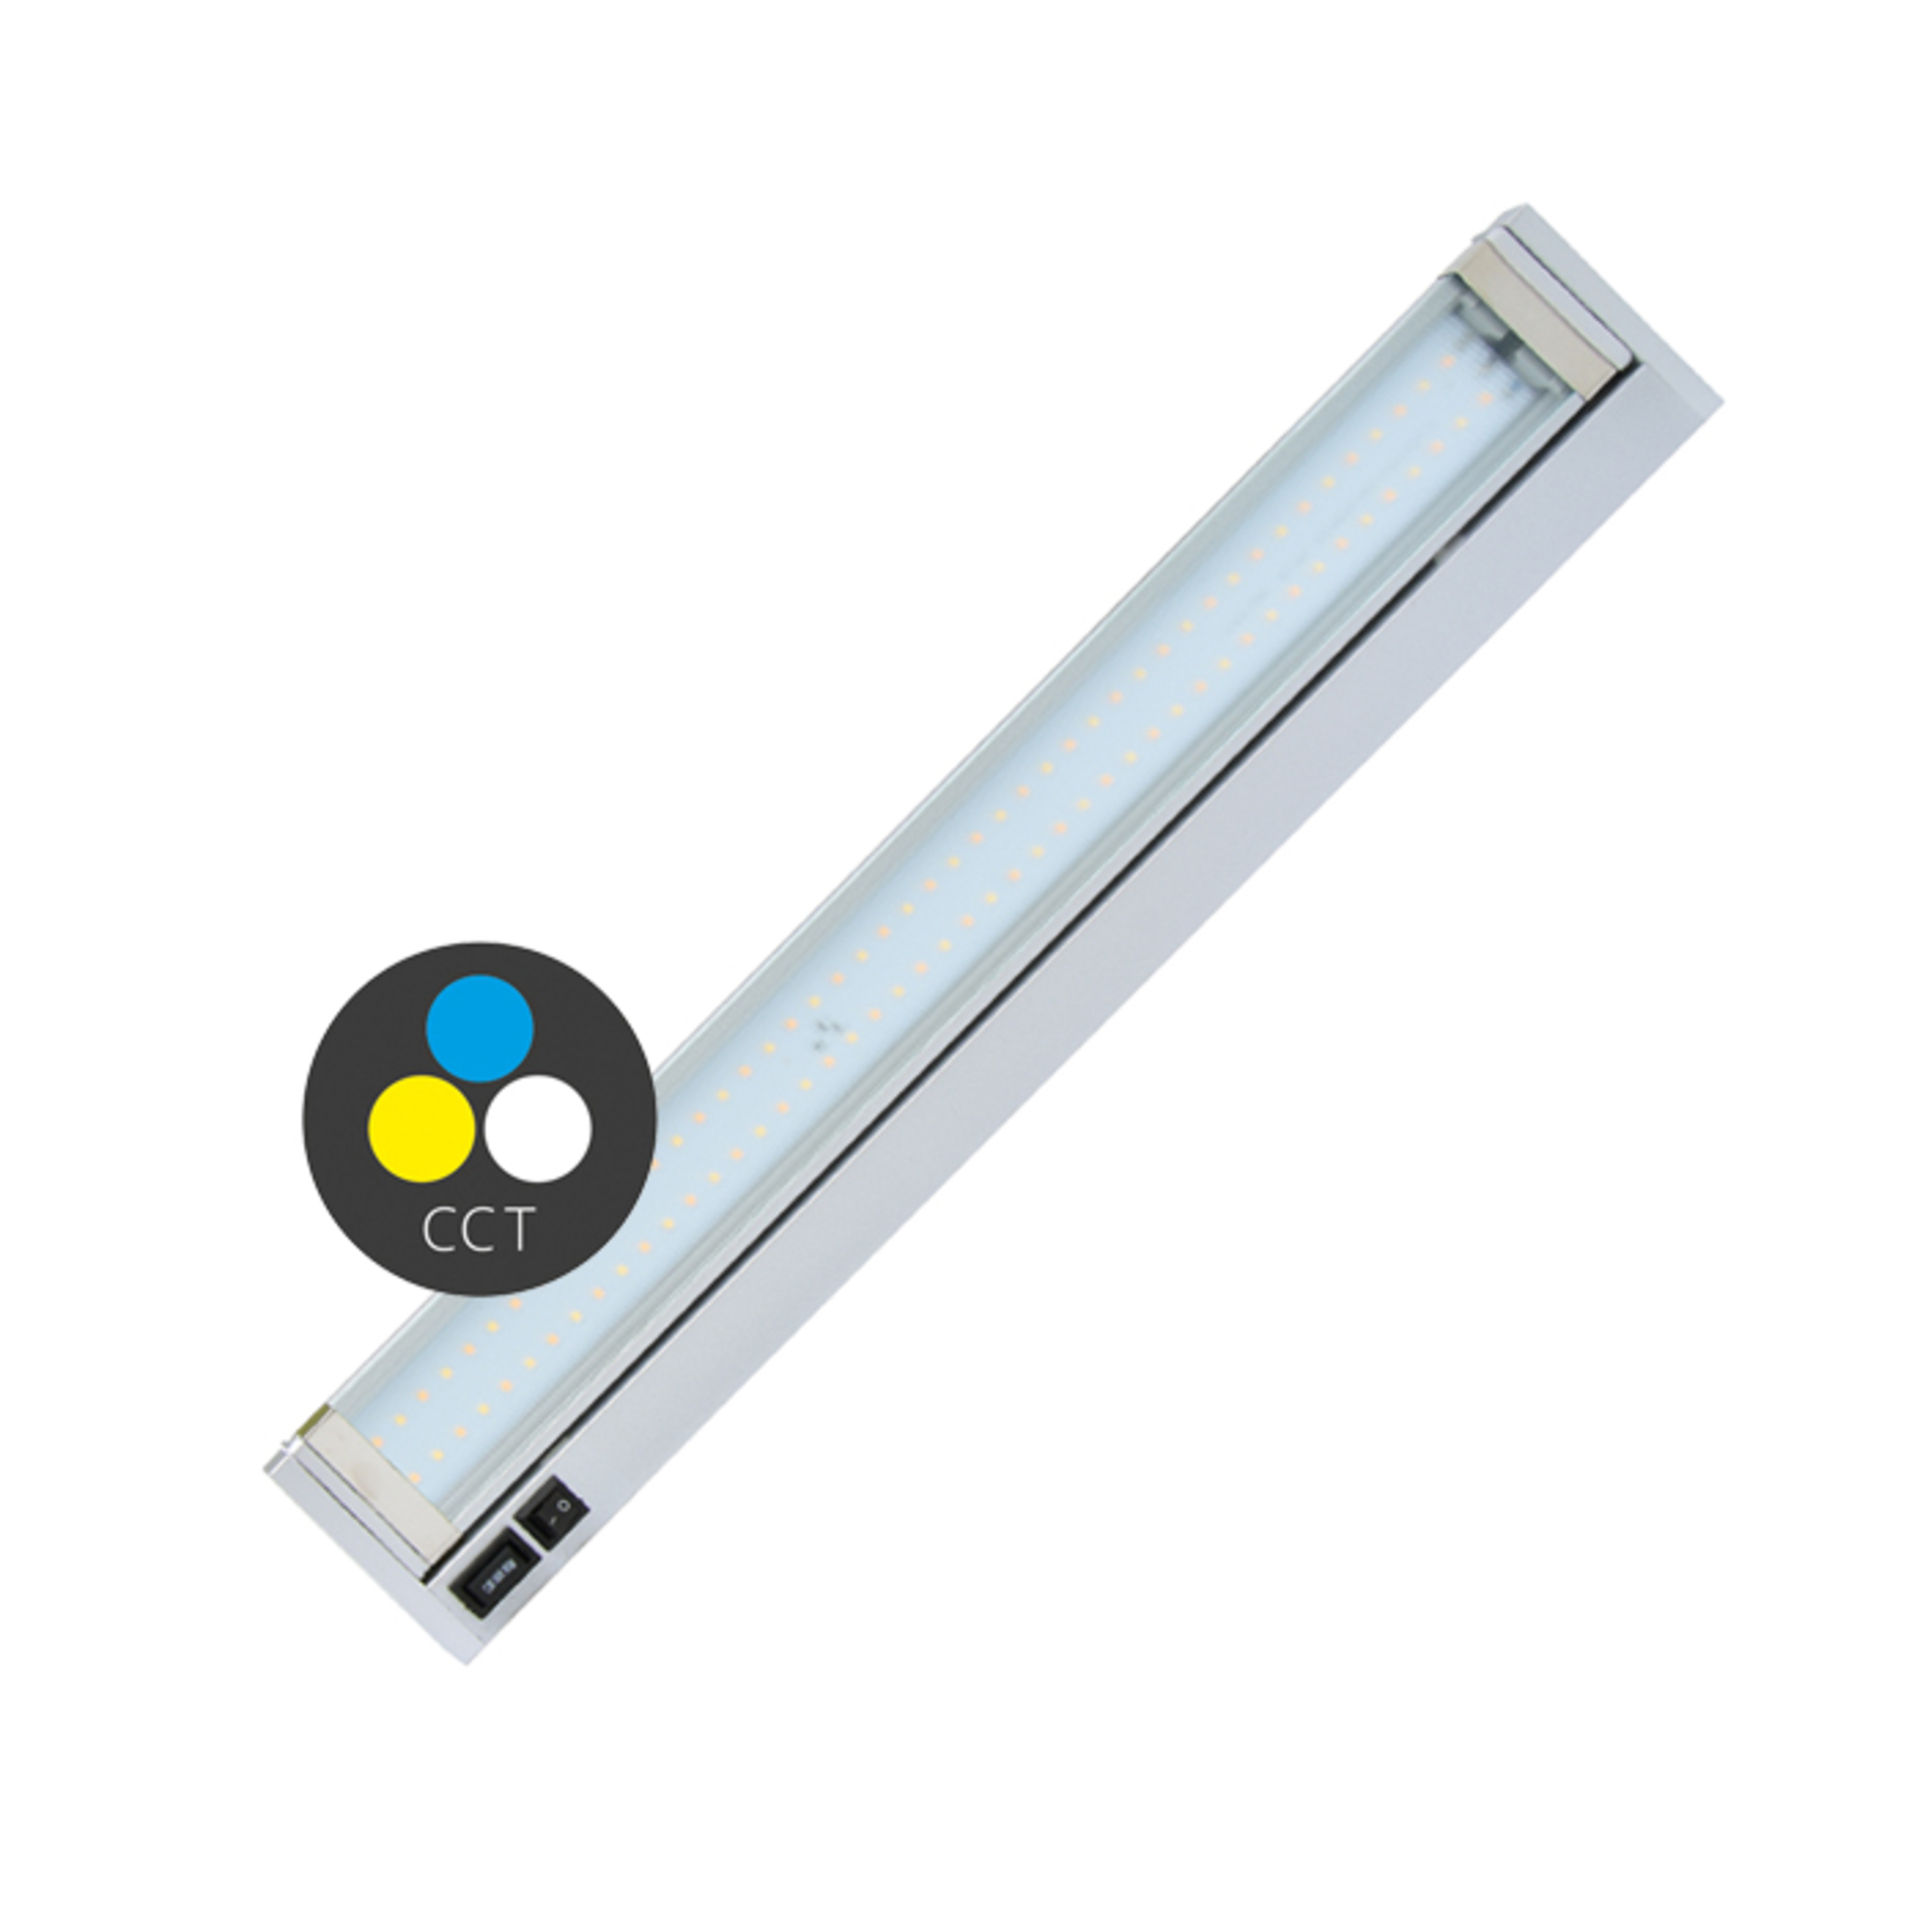 Levně Ecolite kuchyňské LED svítidlo 5.5W, CCT, 480lm, 36cm, stříbrná TL2016-CCT/5.5W